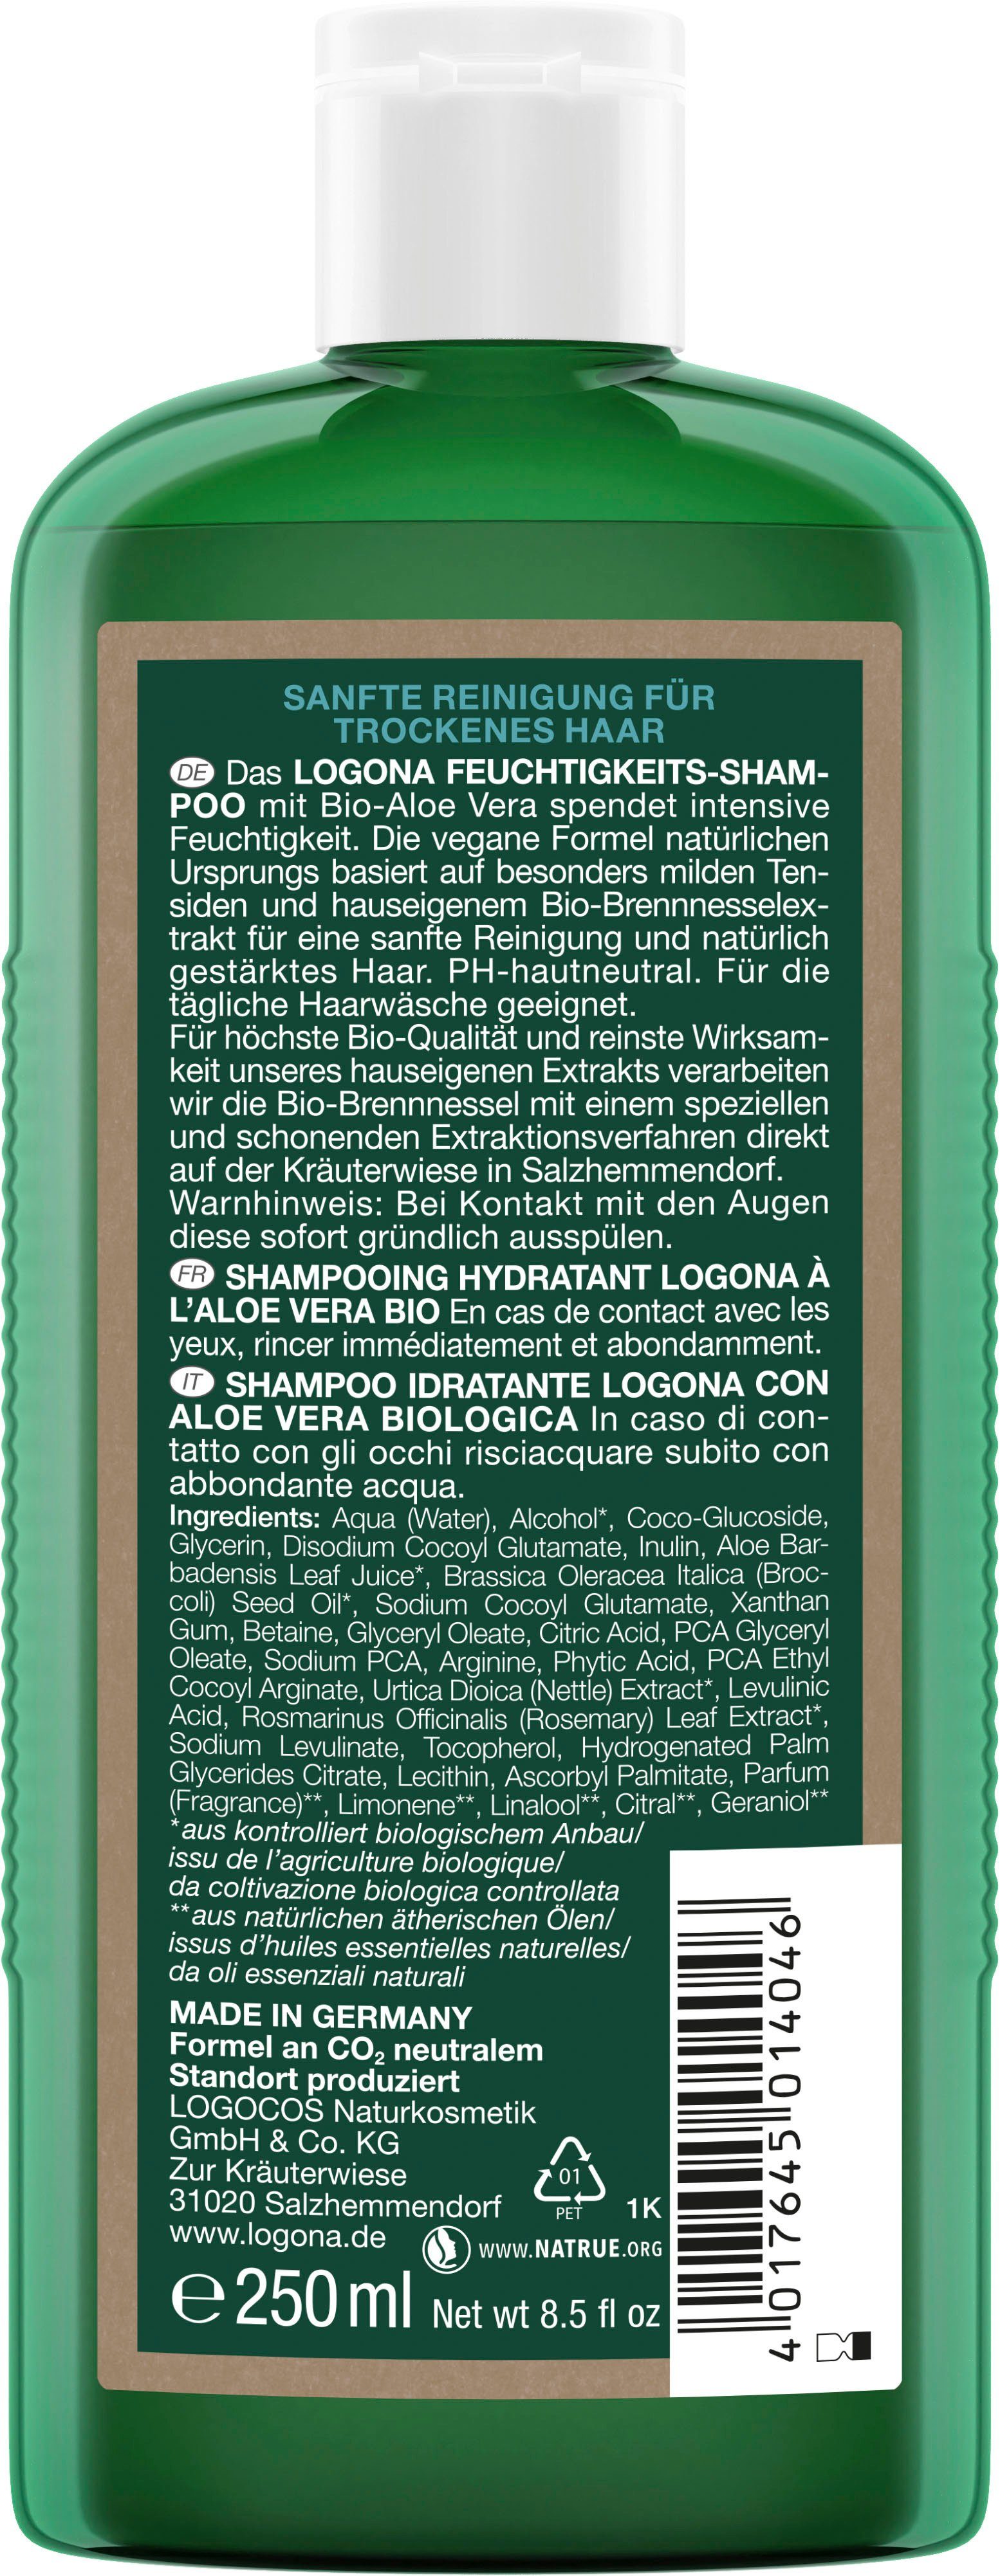 LOGONA Haarshampoo Vera Feuchtigkeits-Shampoo Bio-Aloe Logona